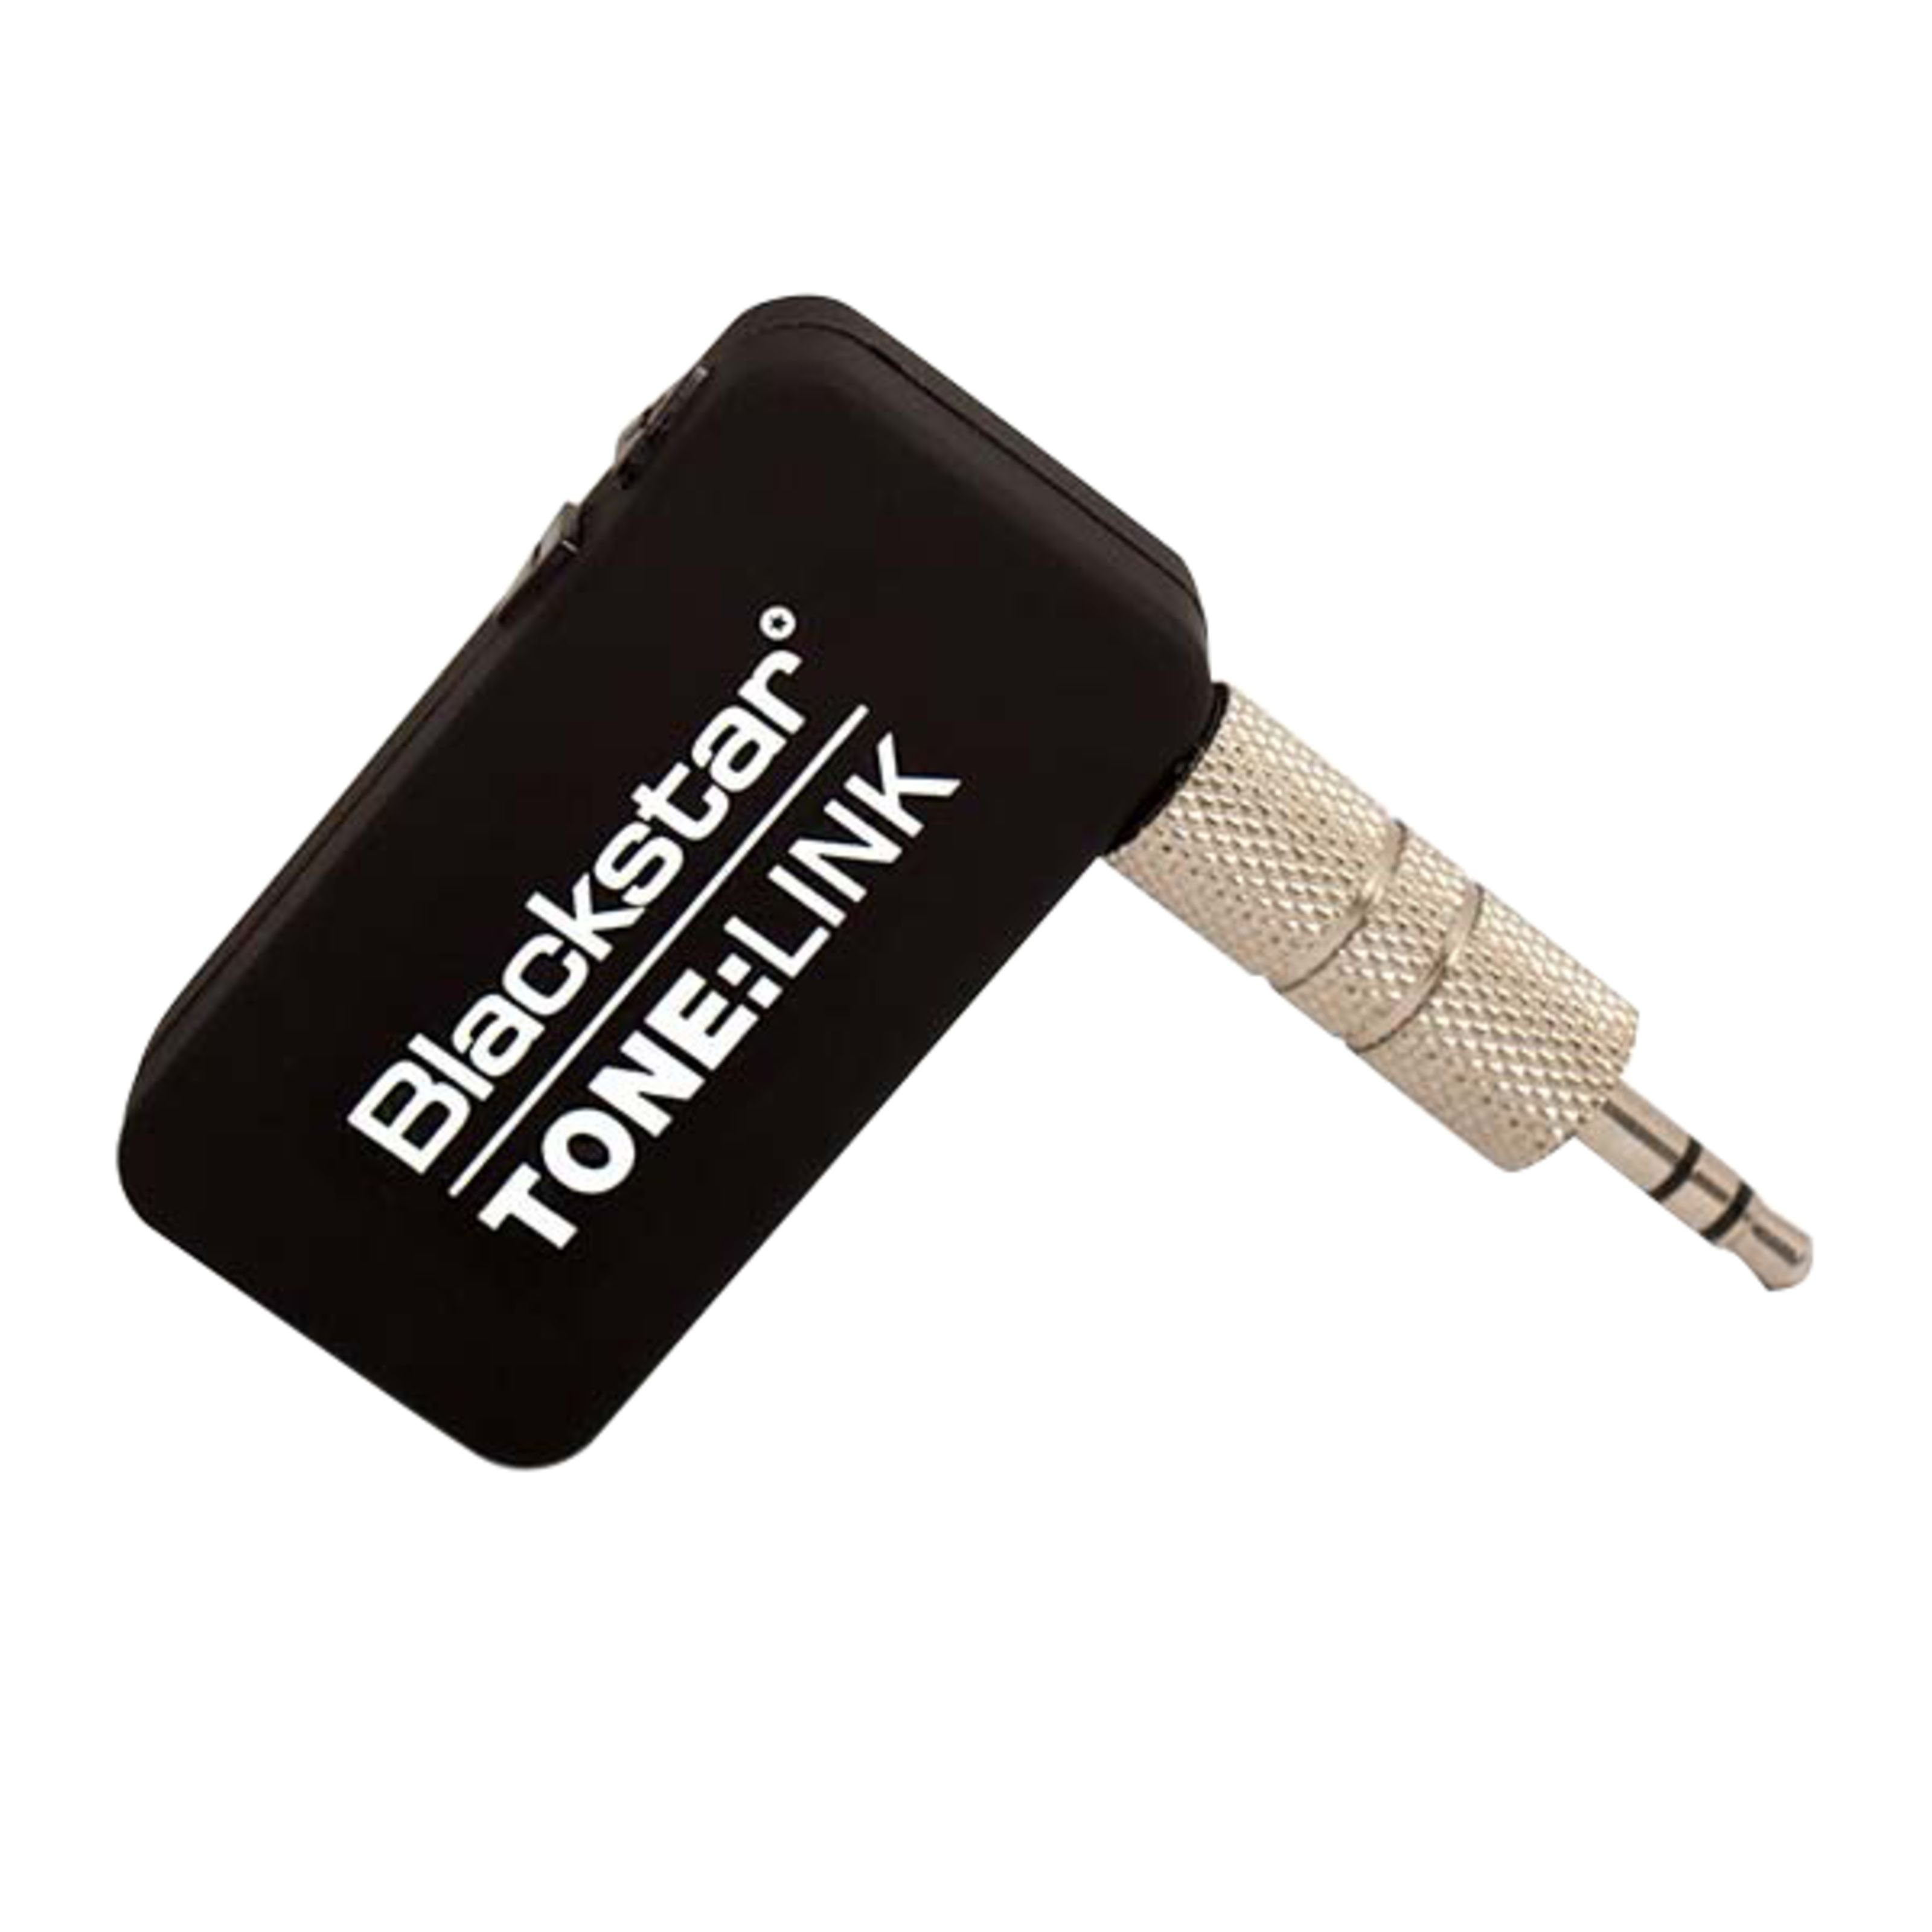 Blackstar Plektrum, TONE:LINK Bluetooth Audio Receiver - Zubehör für Gitarren